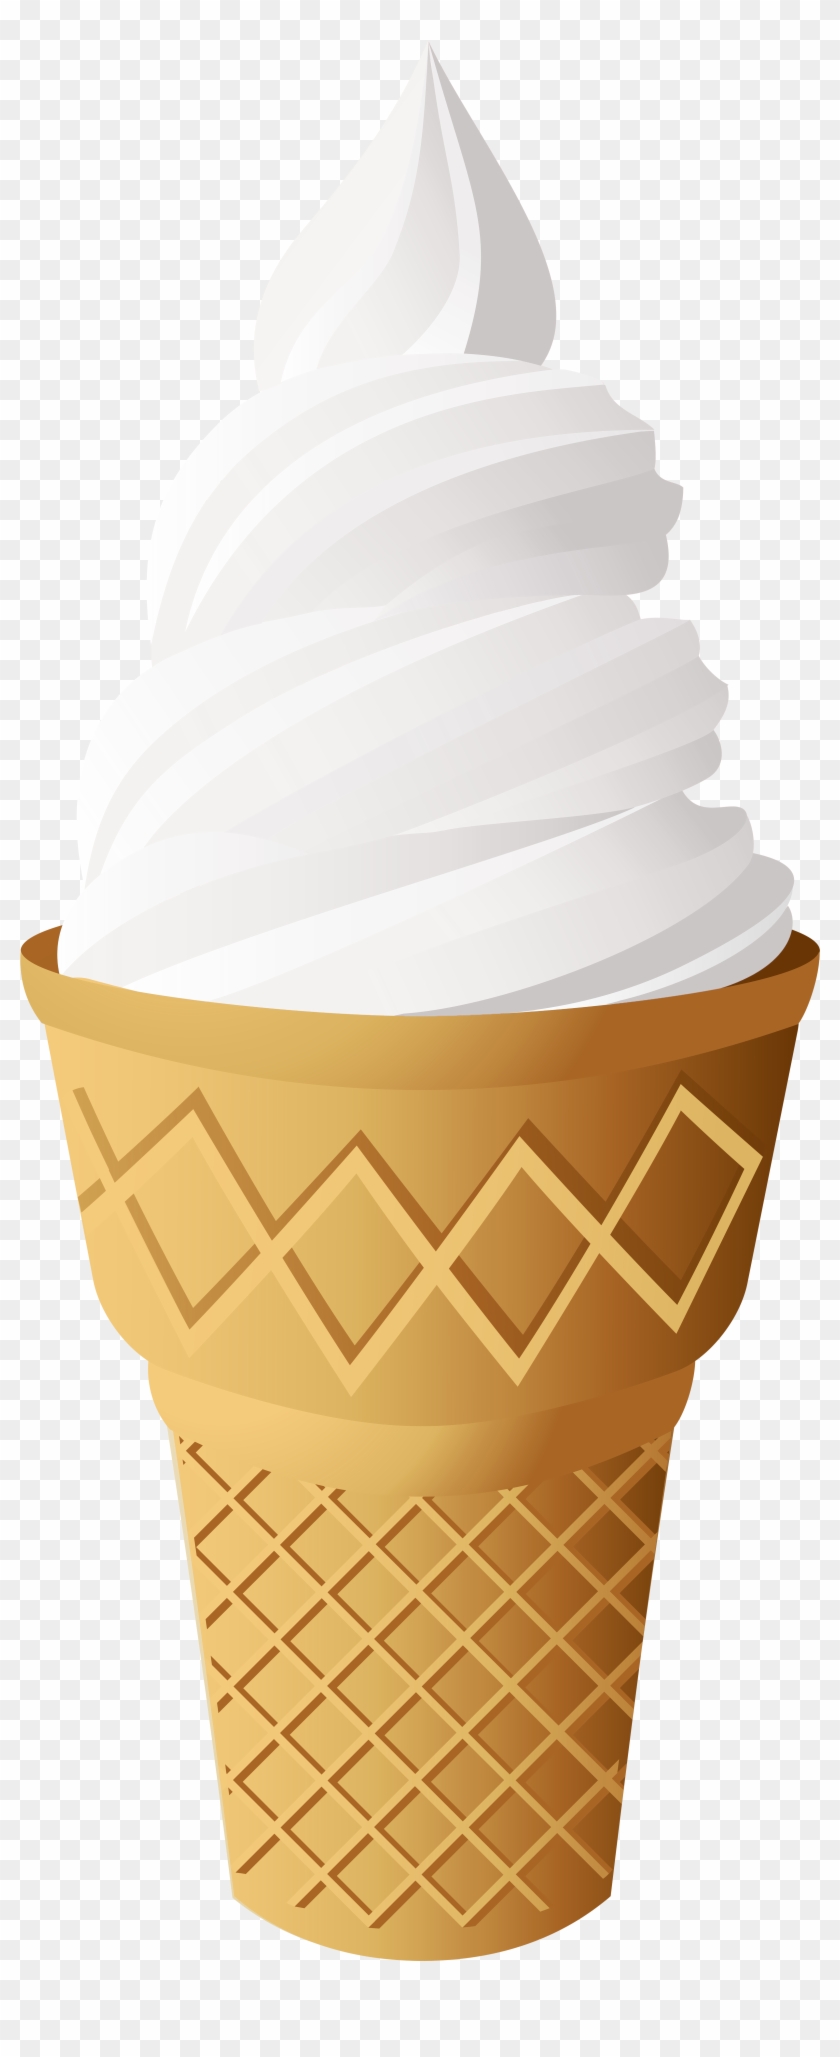 Vanilla Ice Cream Cone Png Clip Art - Vanilla Ice Cream Clipart #393646